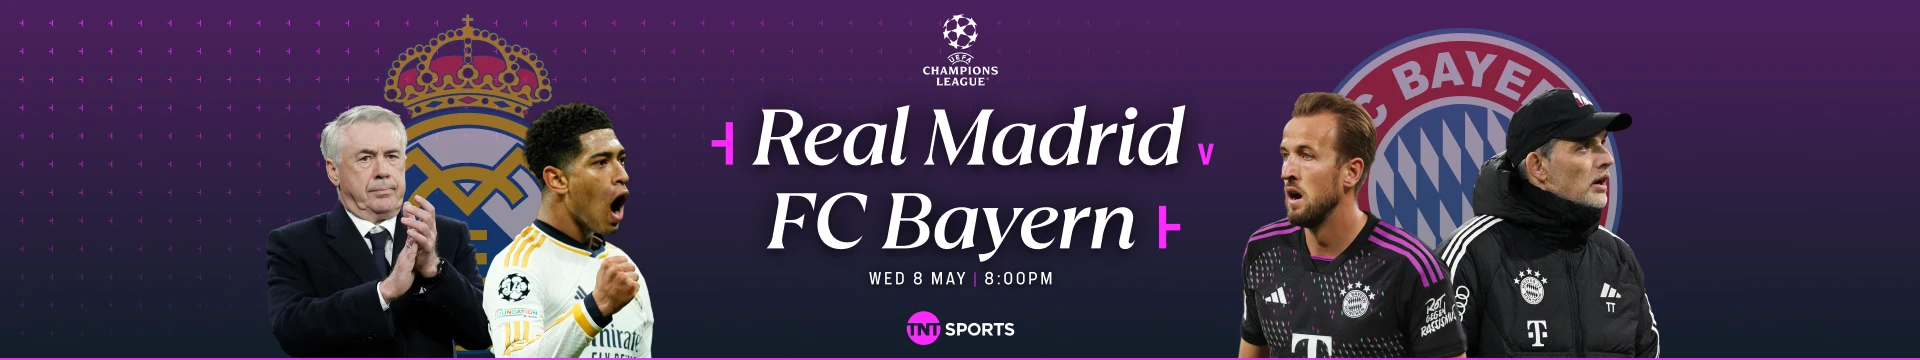 Real Madrid v FC Bayern Wednesday 8 May at 8pm